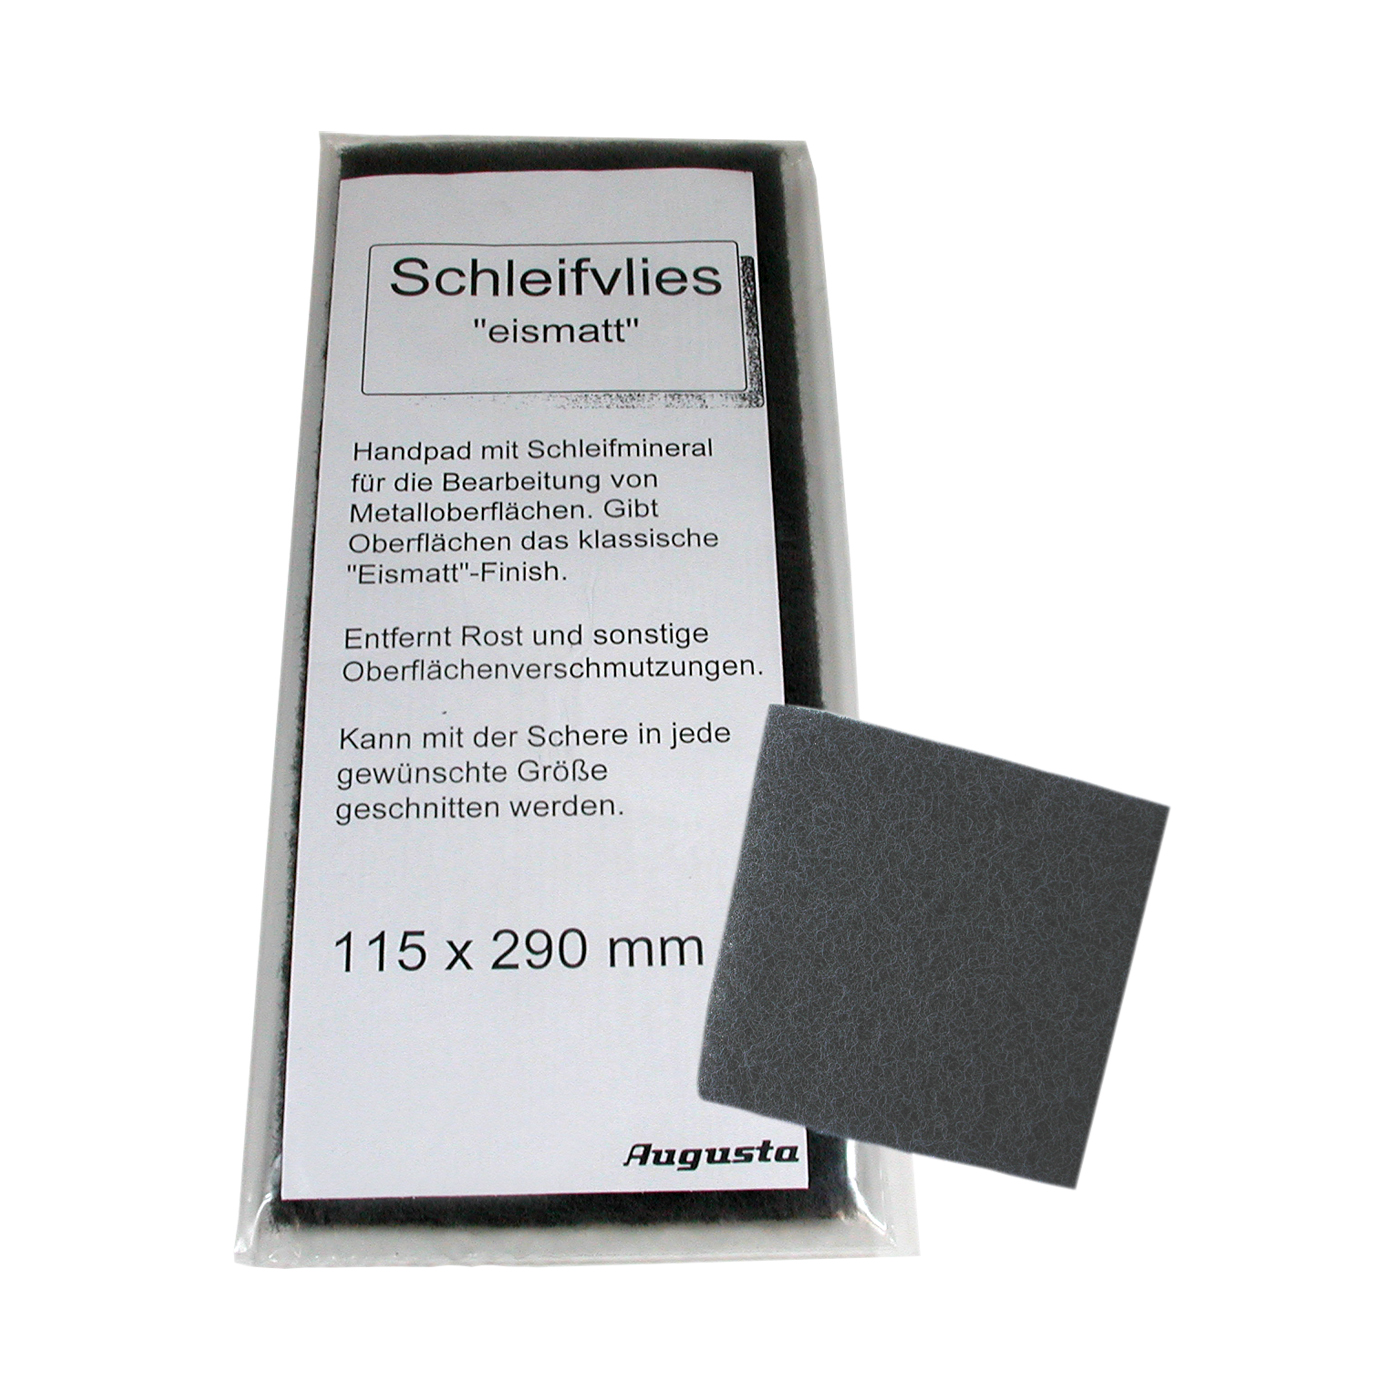 Schleifvlies, Handpad, fein, 115 x 290 mm - 1 Stück